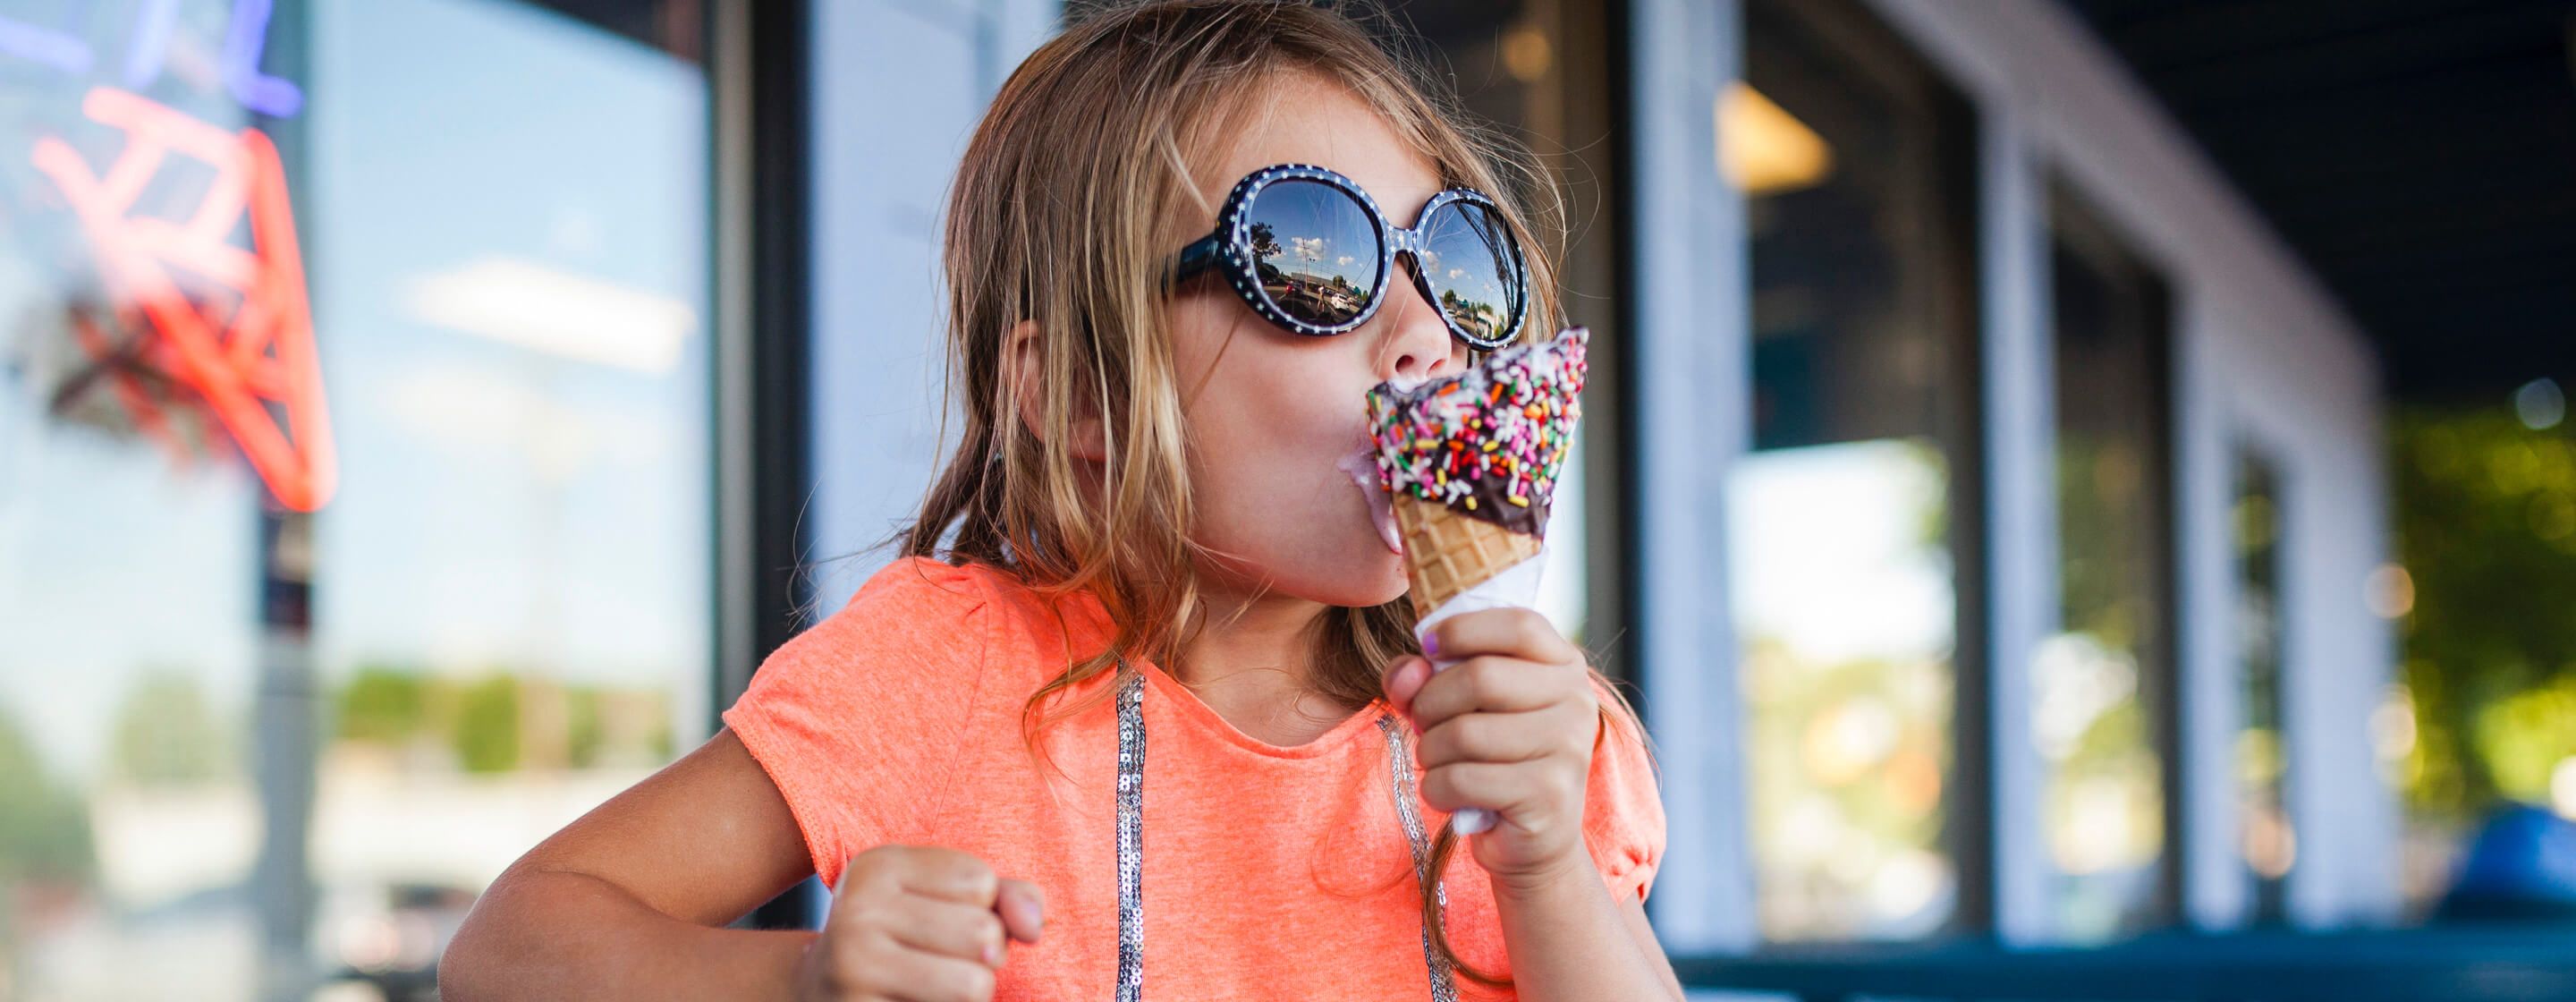 戴墨镜的年轻女孩在一家冰淇淋店前吃着巧克力和洒满巧克力米的冰淇淋甜筒